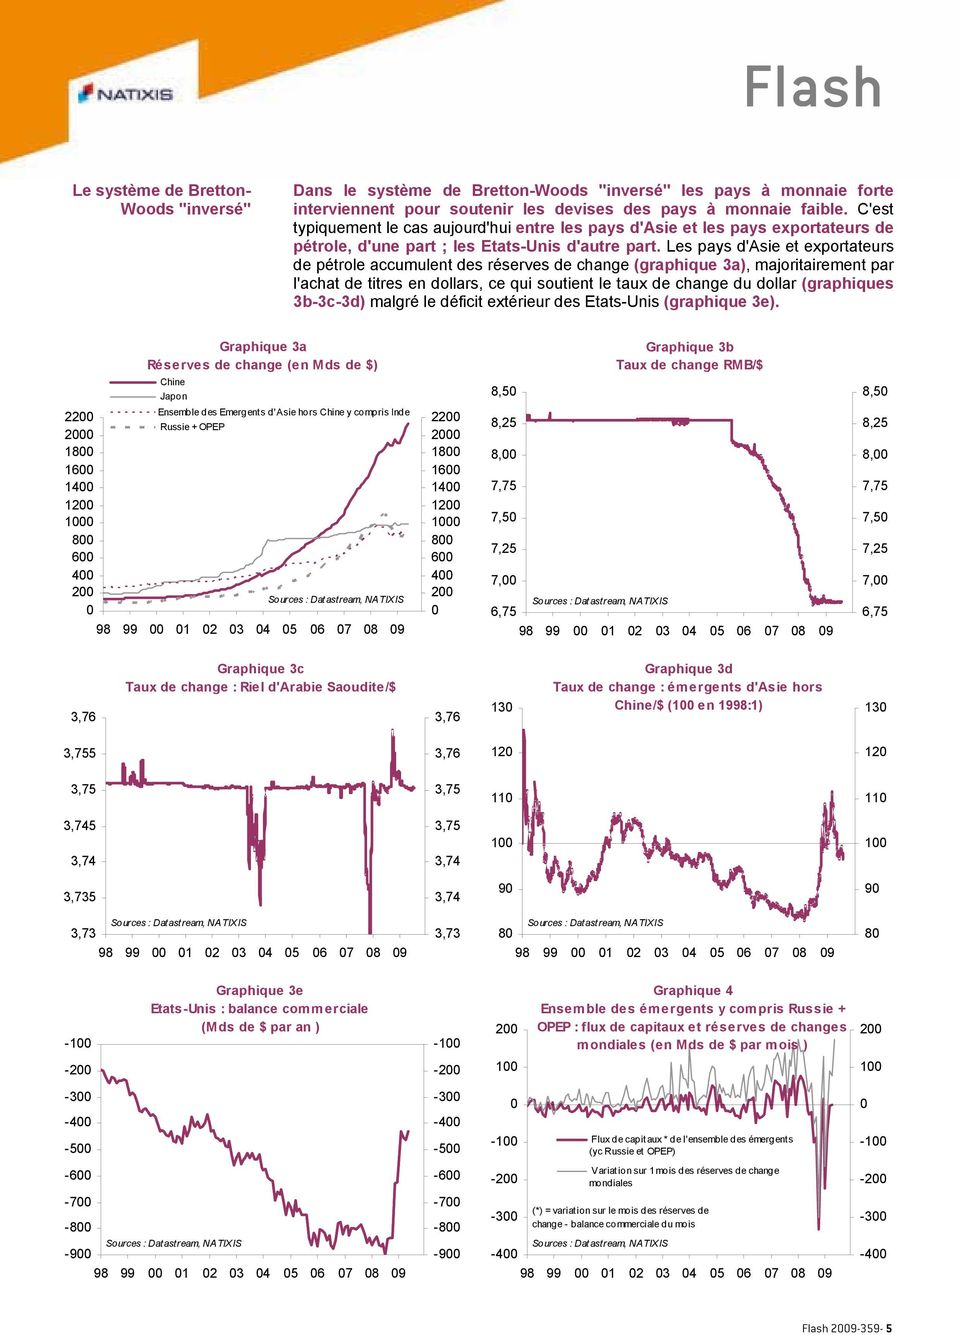 Les pays d'asie et exportateurs de pétrole accumulent des réserves de change (graphique 3a), majoritairement par l'achat de titres en dollars, ce qui soutient le taux de change du dollar (graphiques